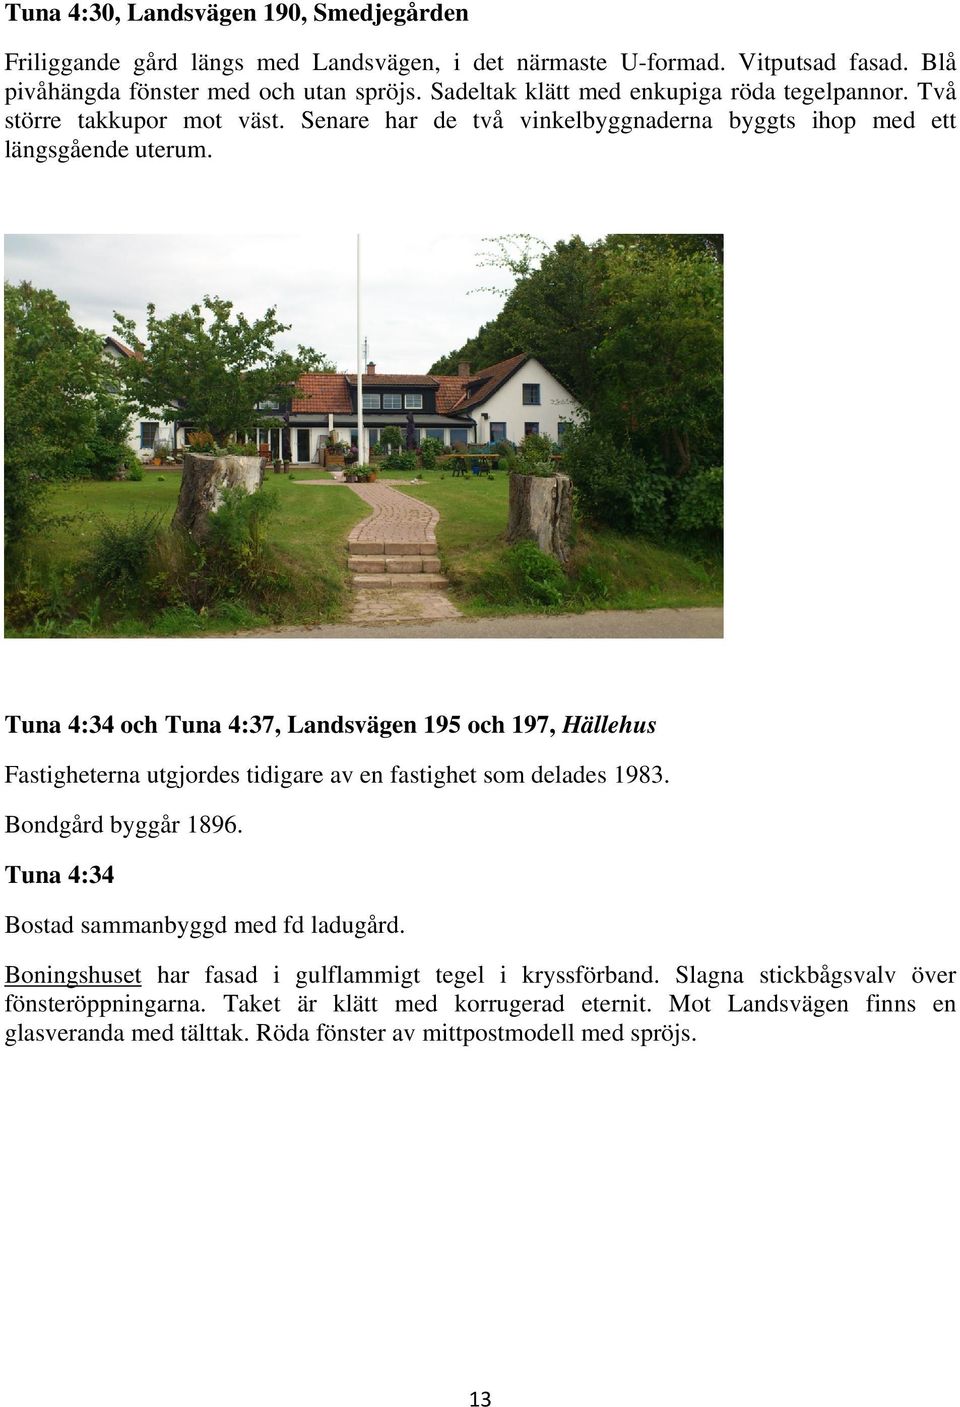 Tuna 4:34 och Tuna 4:37, Landsvägen 195 och 197, Hällehus Fastigheterna utgjordes tidigare av en fastighet som delades 1983. Bondgård byggår 1896.